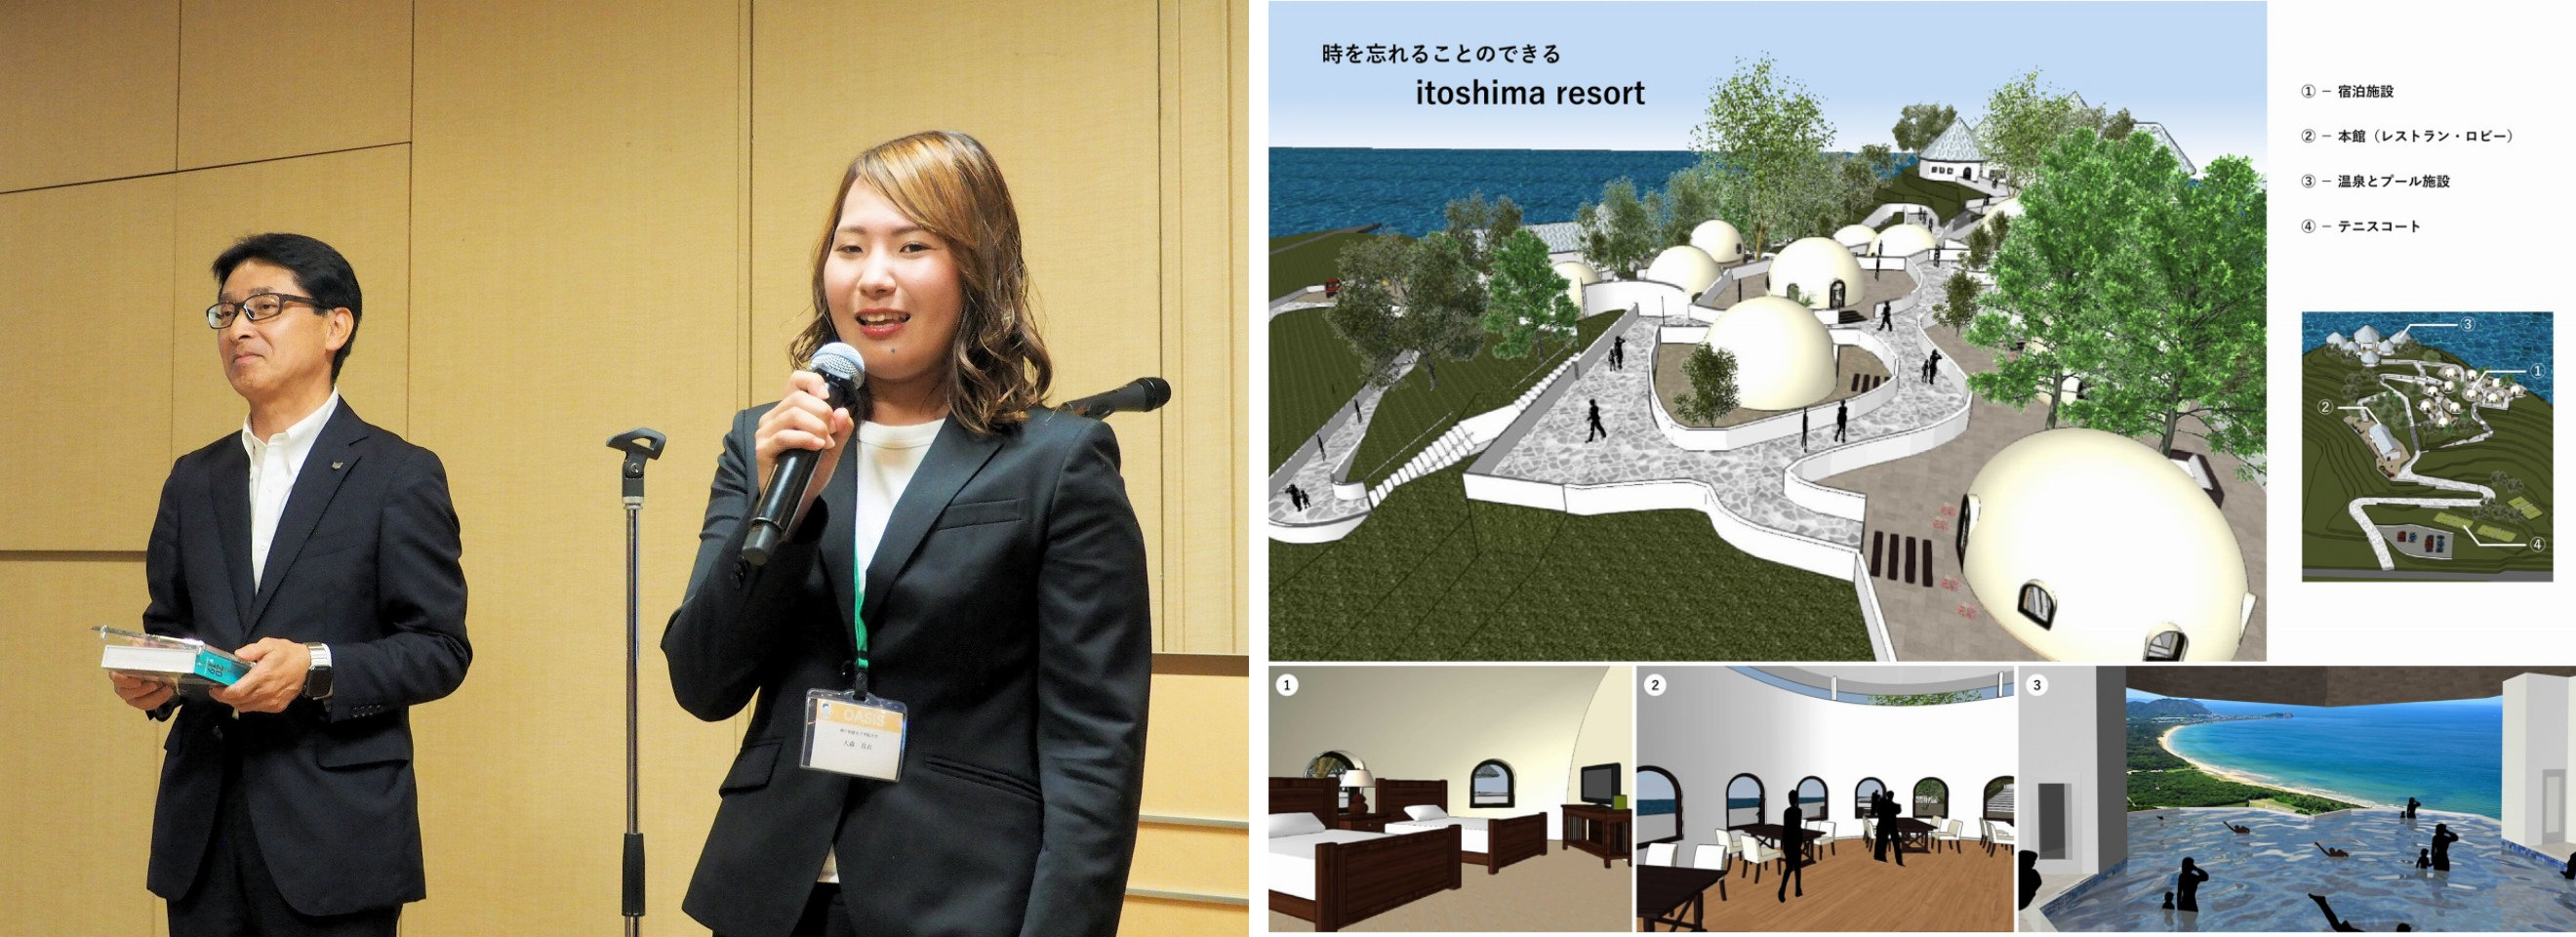 （左写真）エーアンドエー代表取締役社長の横田貴史氏と受賞の感想を語る大森真衣さん。（右資料）受賞作品の「時を忘れることのできる itoshima resort」